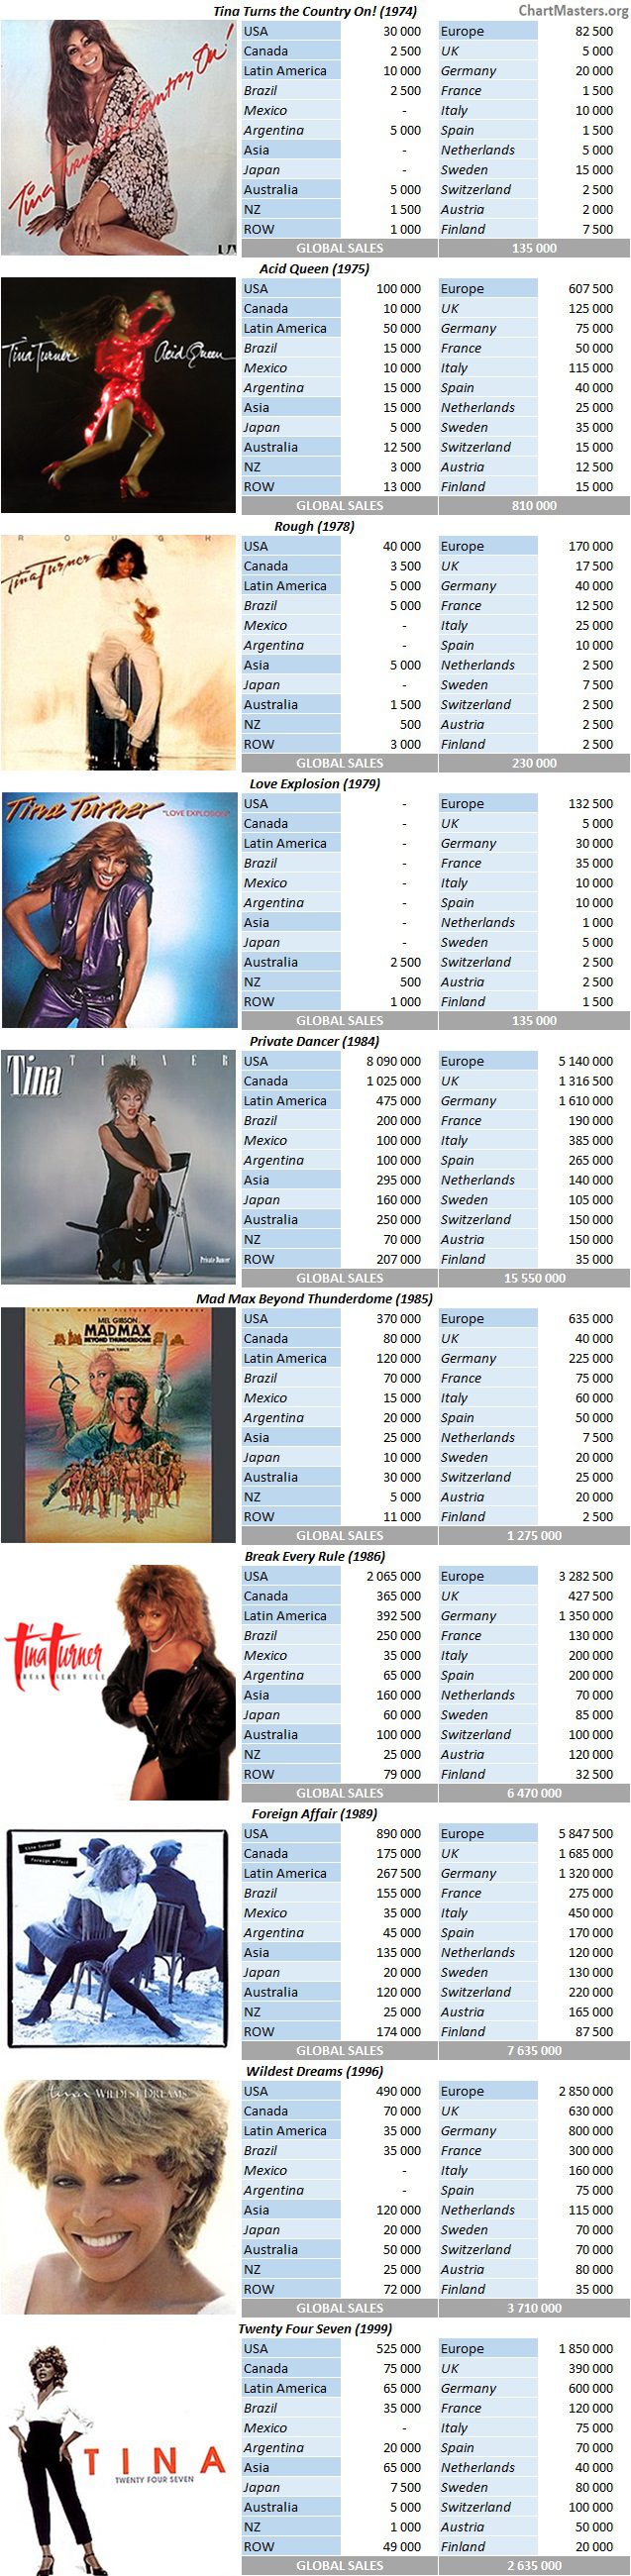 CSPC Tina Turner album sales breakdowns